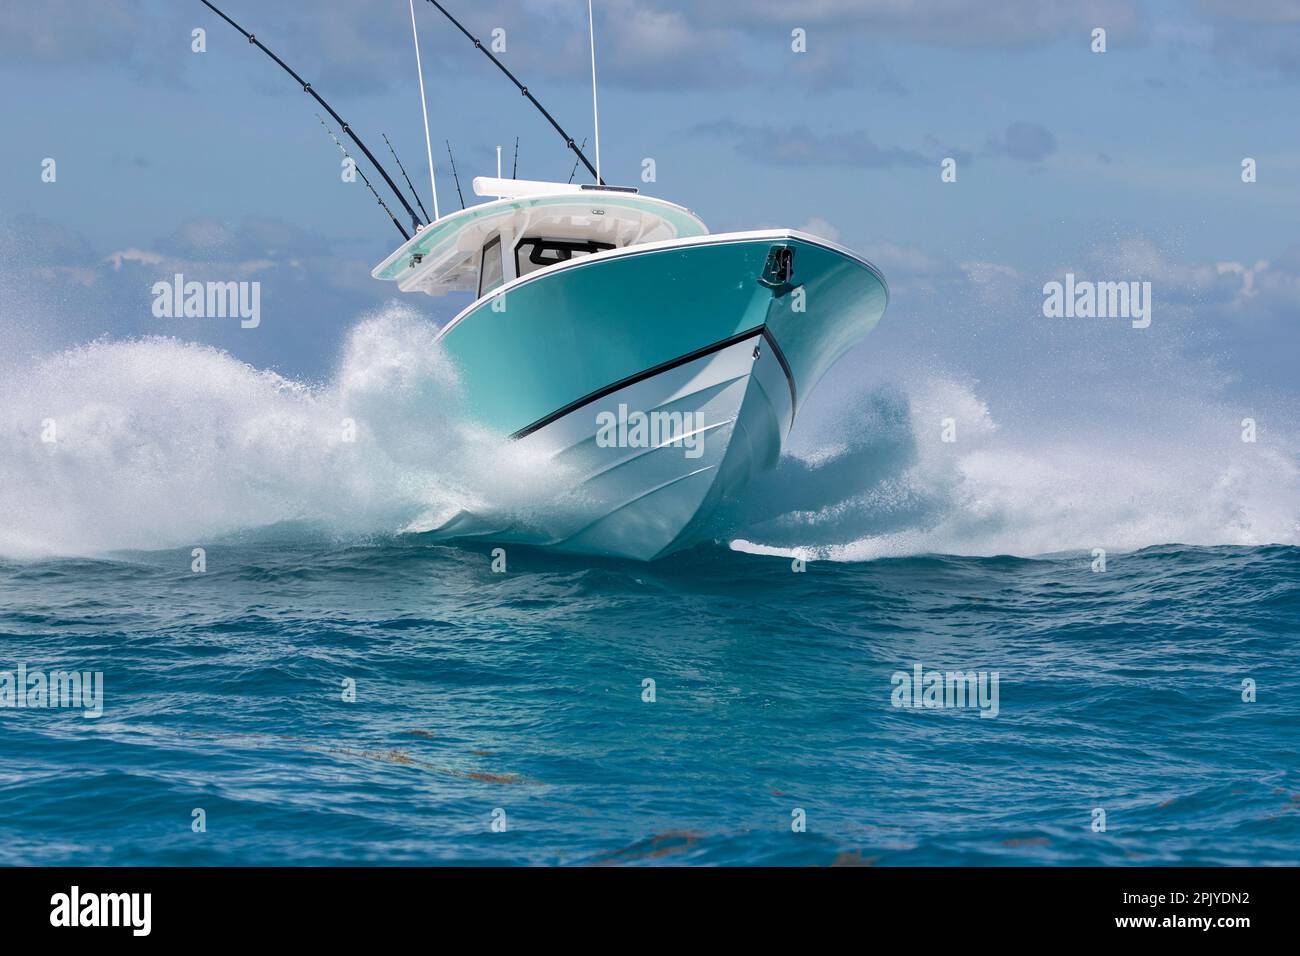 Ein Schnellboot in der Mittelkonsole, das in rauem Wasser spritzt. Stockfoto